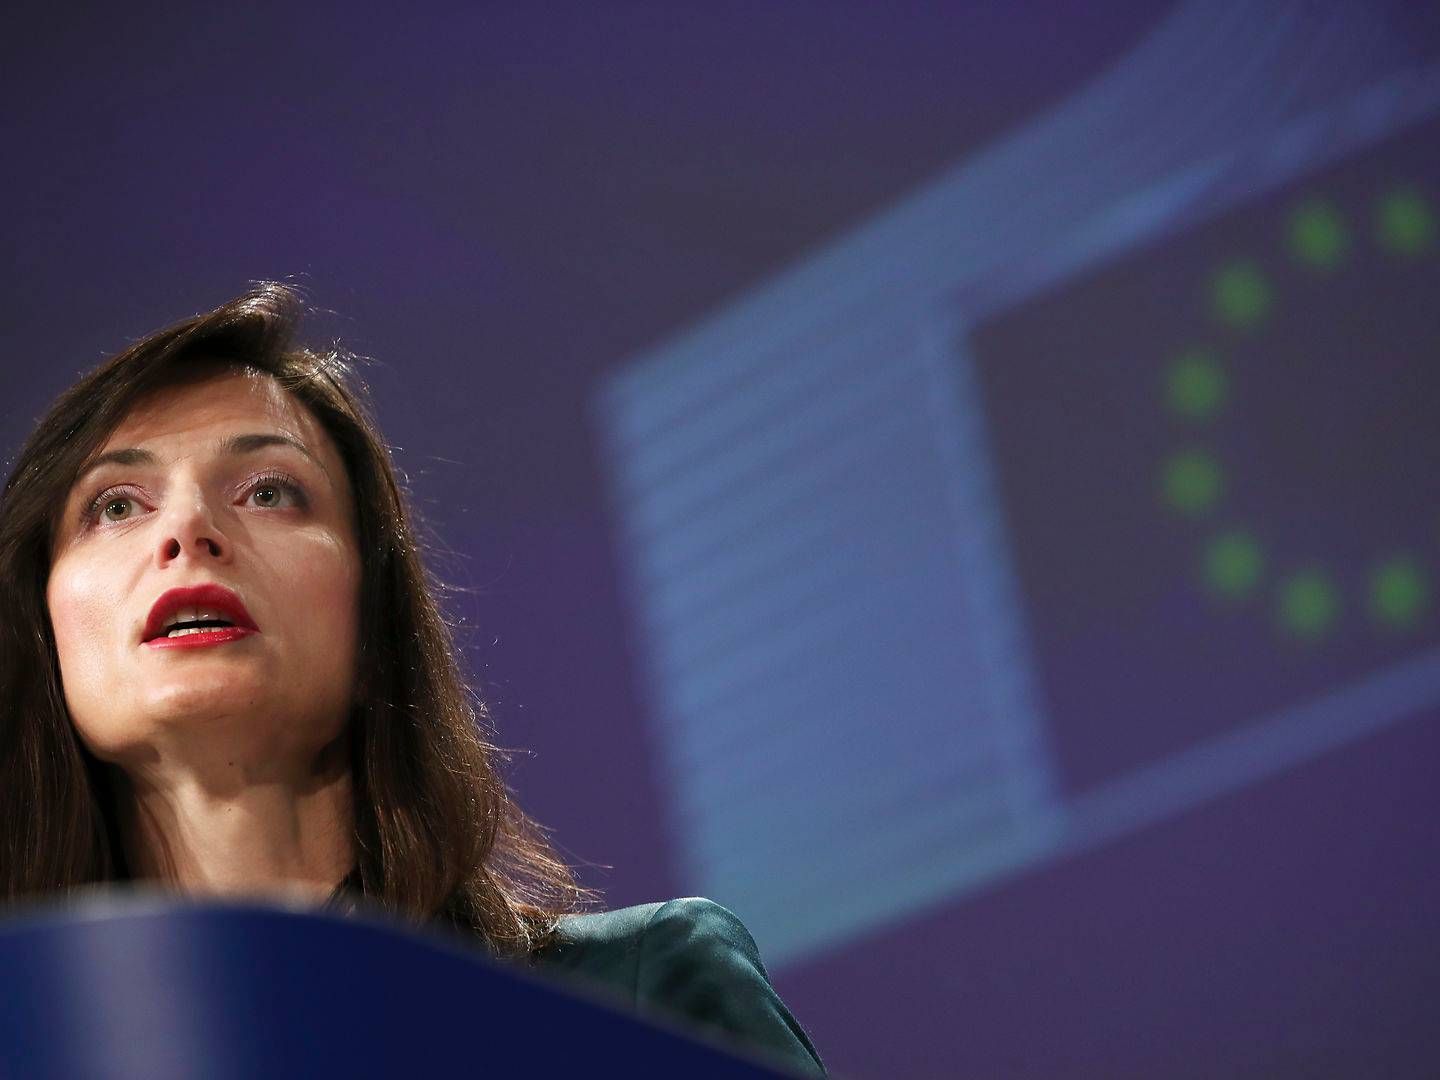 Det var tidligere EU-Kommissær, Mariya Gabriel, der introducerede en frivillig adfærdskodeks for at bekæmpe misinformation. Der er nu behøv for stramninger, siger rapport. | Foto: Francisco Seco/AP/Ritzau Scanpix